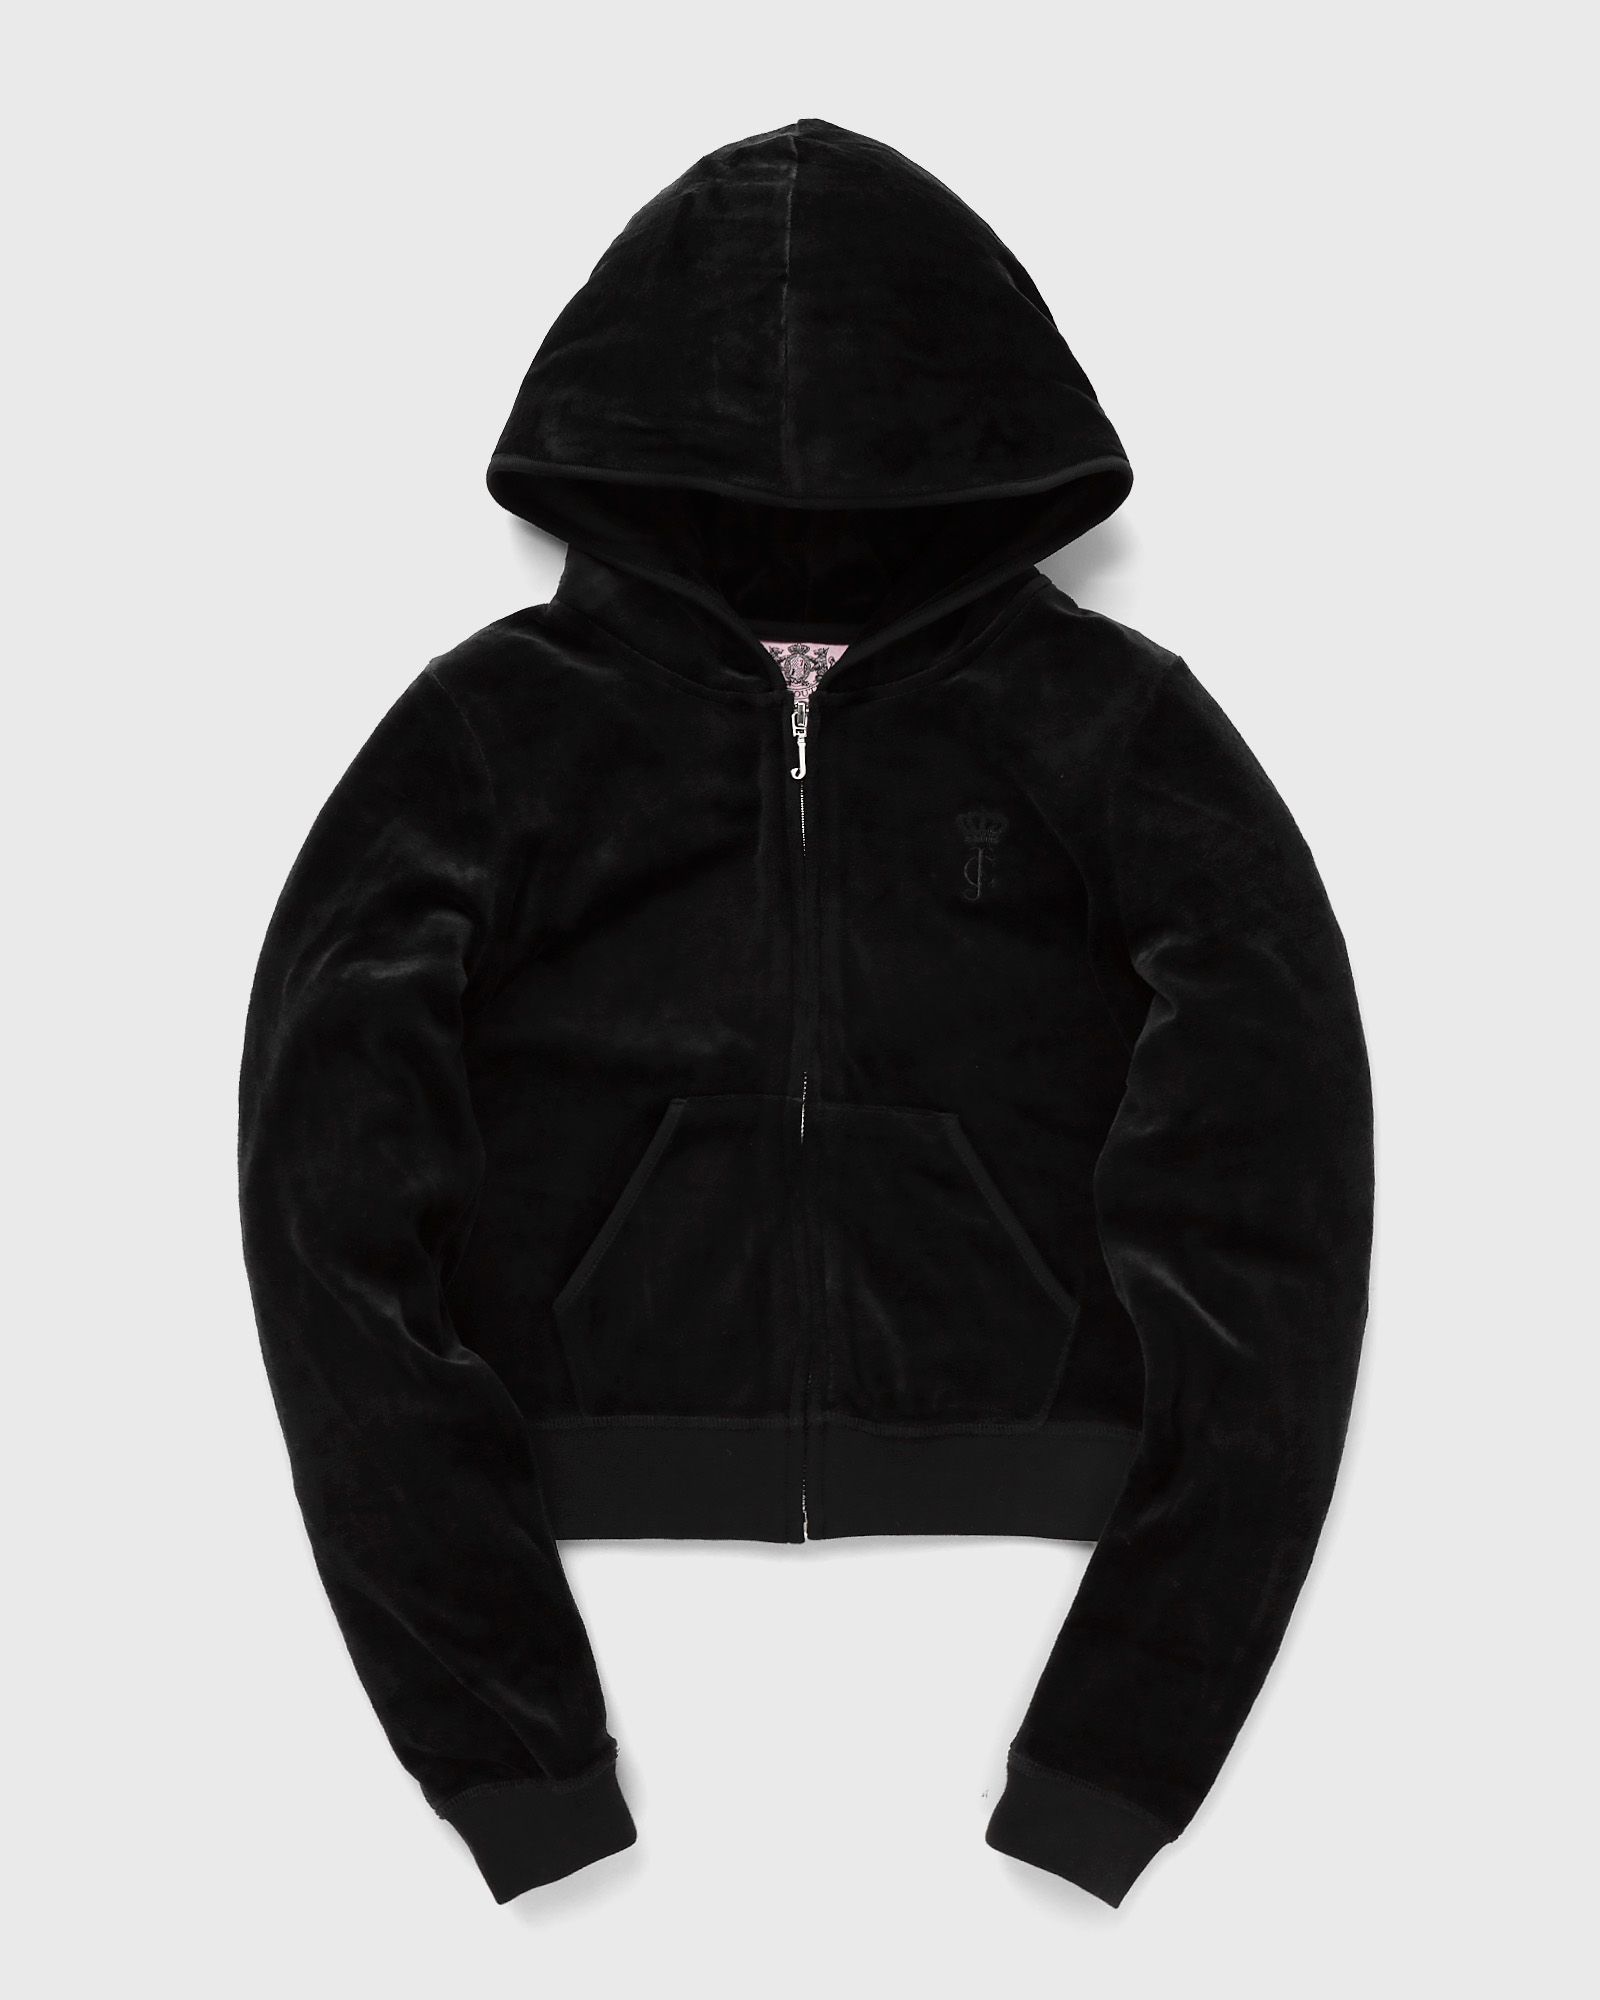 Juicy Couture - wmns robyn hoodie women half-zips|hoodies black in größe:xs